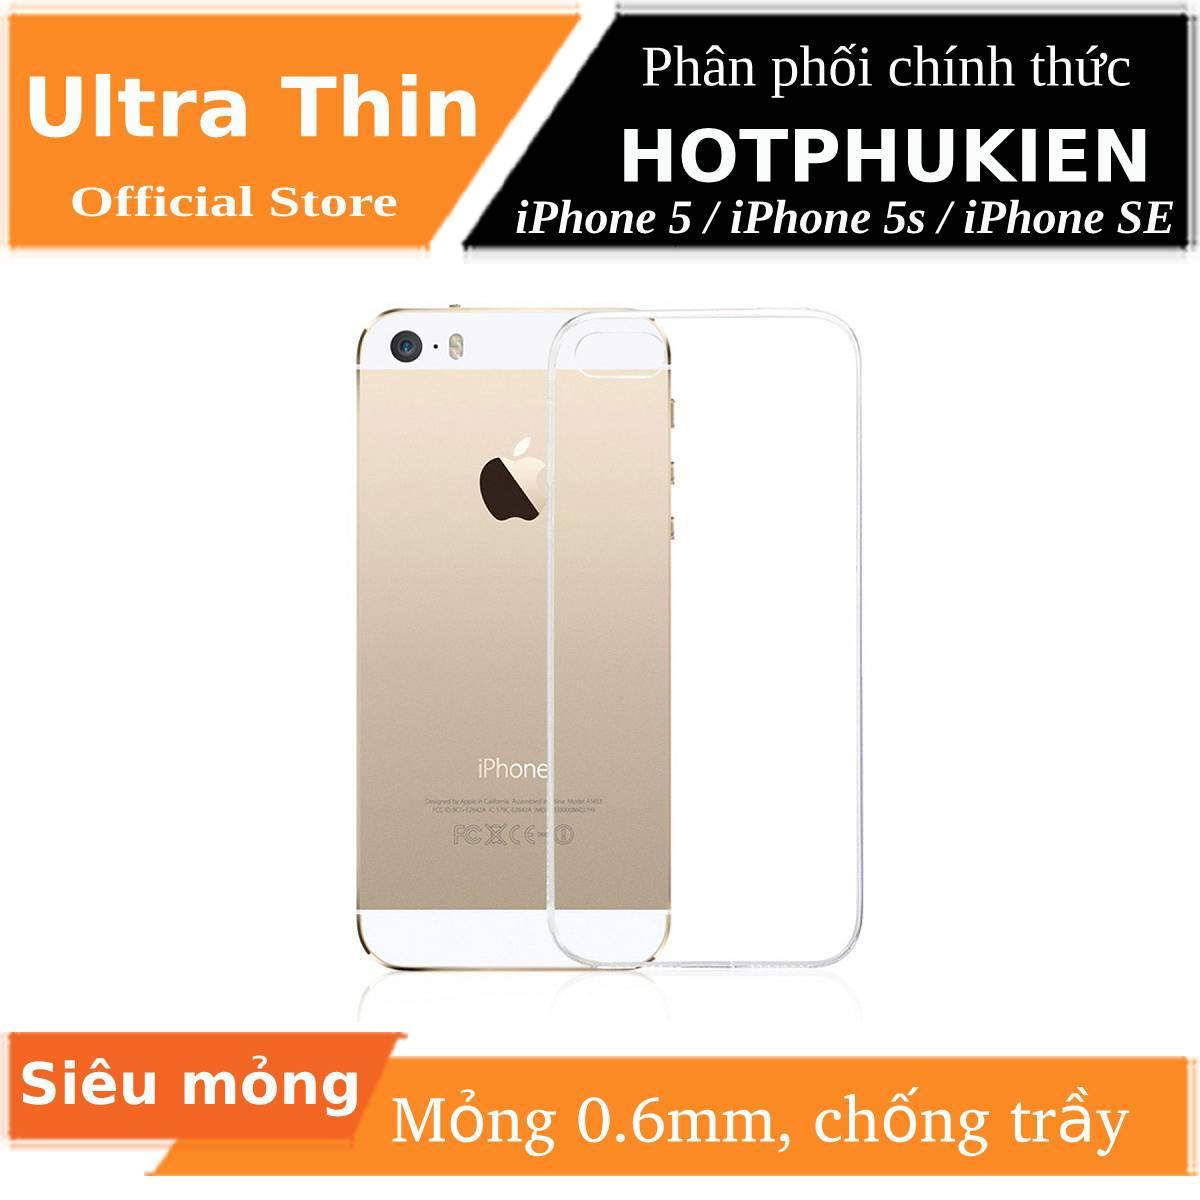 Ốp lưng dẻo silicon trong suốt cho iPhone 5 / 5s / SE hiệu Ultra Thin siêu mỏng 0.6mm